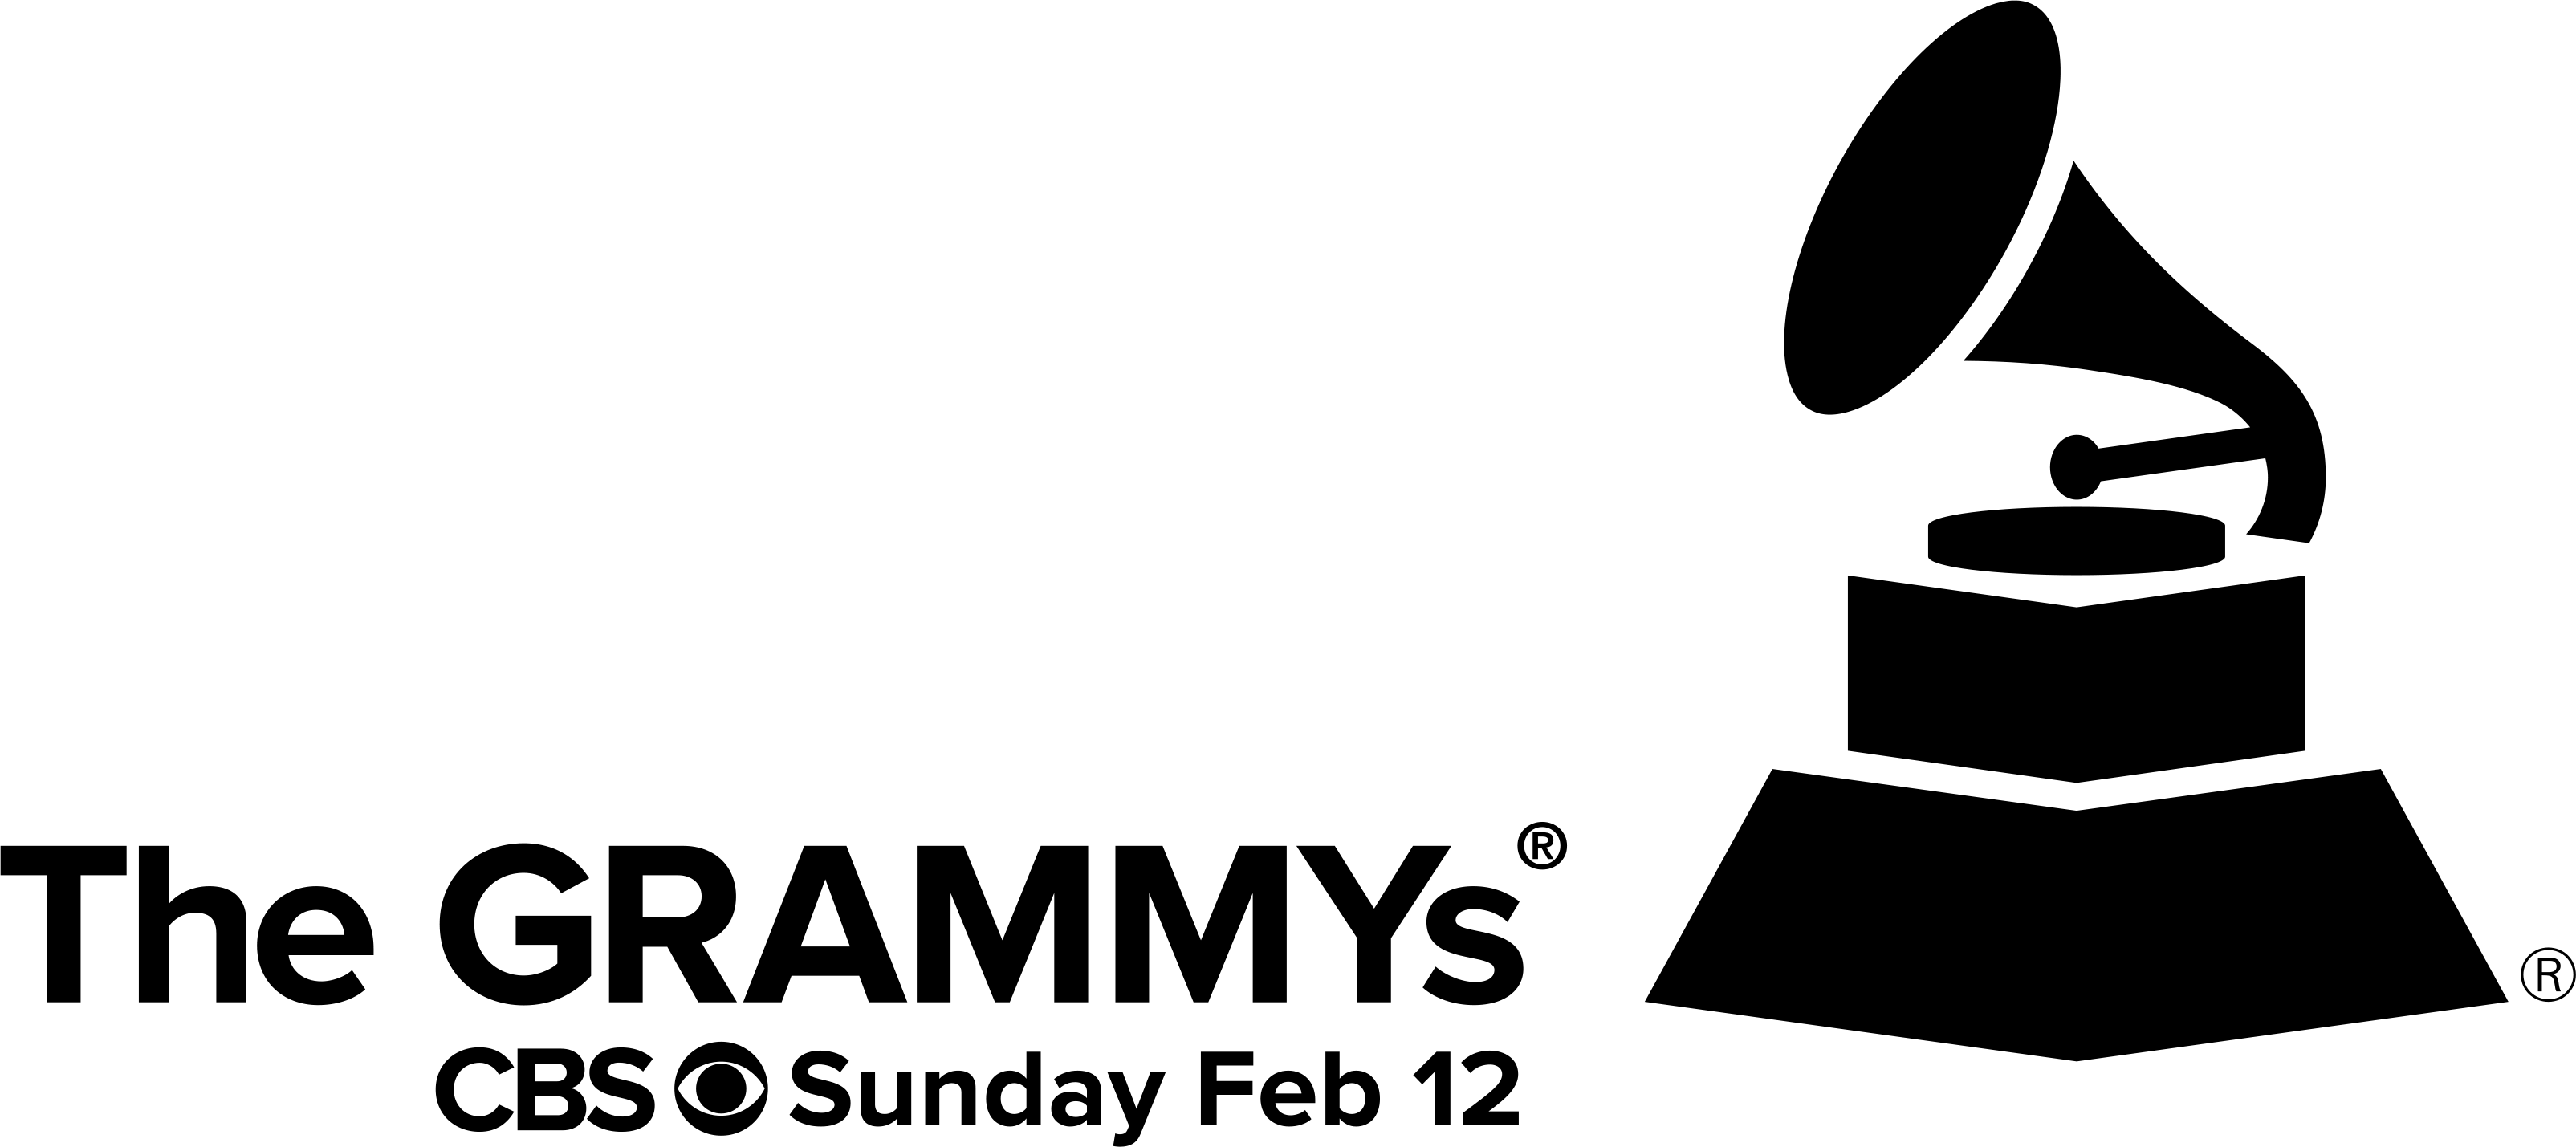 Grammys Logo - grammy-logo - The Journal of Gospel Music